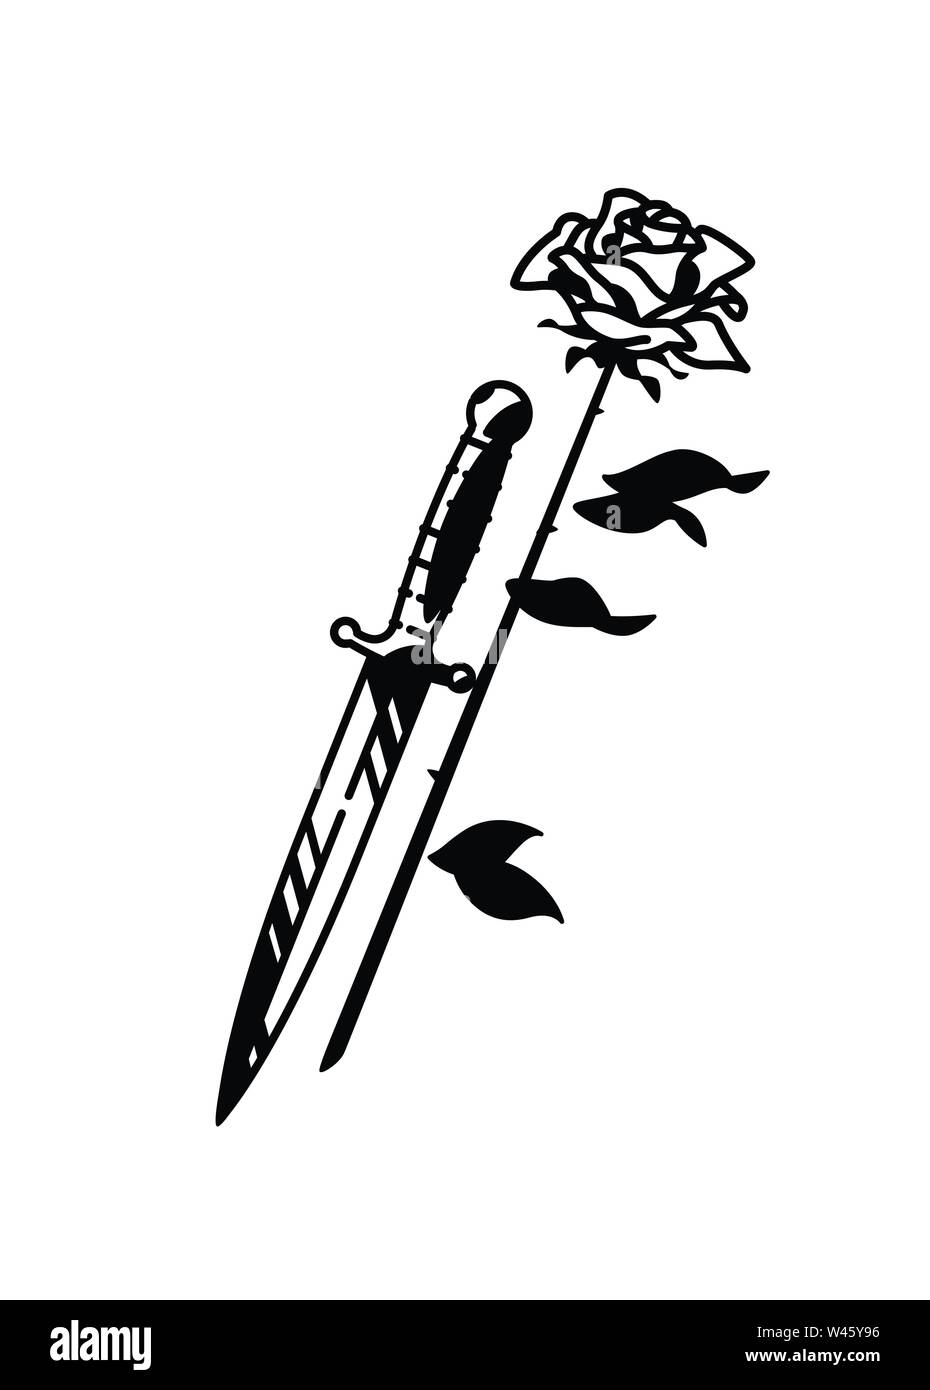 Dornen rose zeichnen mit Ausmalbilder Rosen